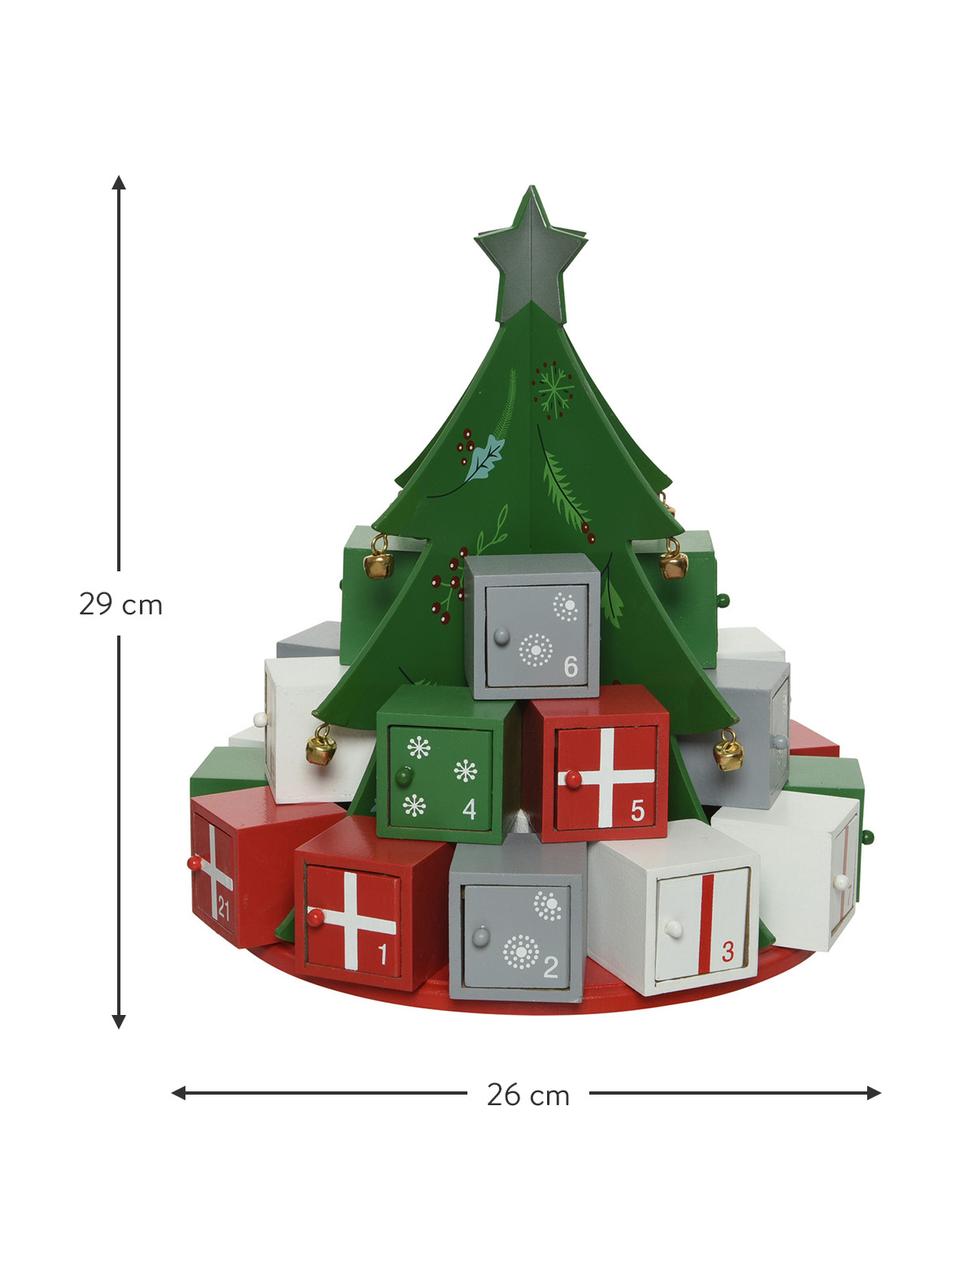 Adventní kalendář Tree, V 29 cm, Dřevovláknitá deska střední hustoty, potažená, Zelená, červená, bílá, šedá, Ø 26 cm, V 29 cm